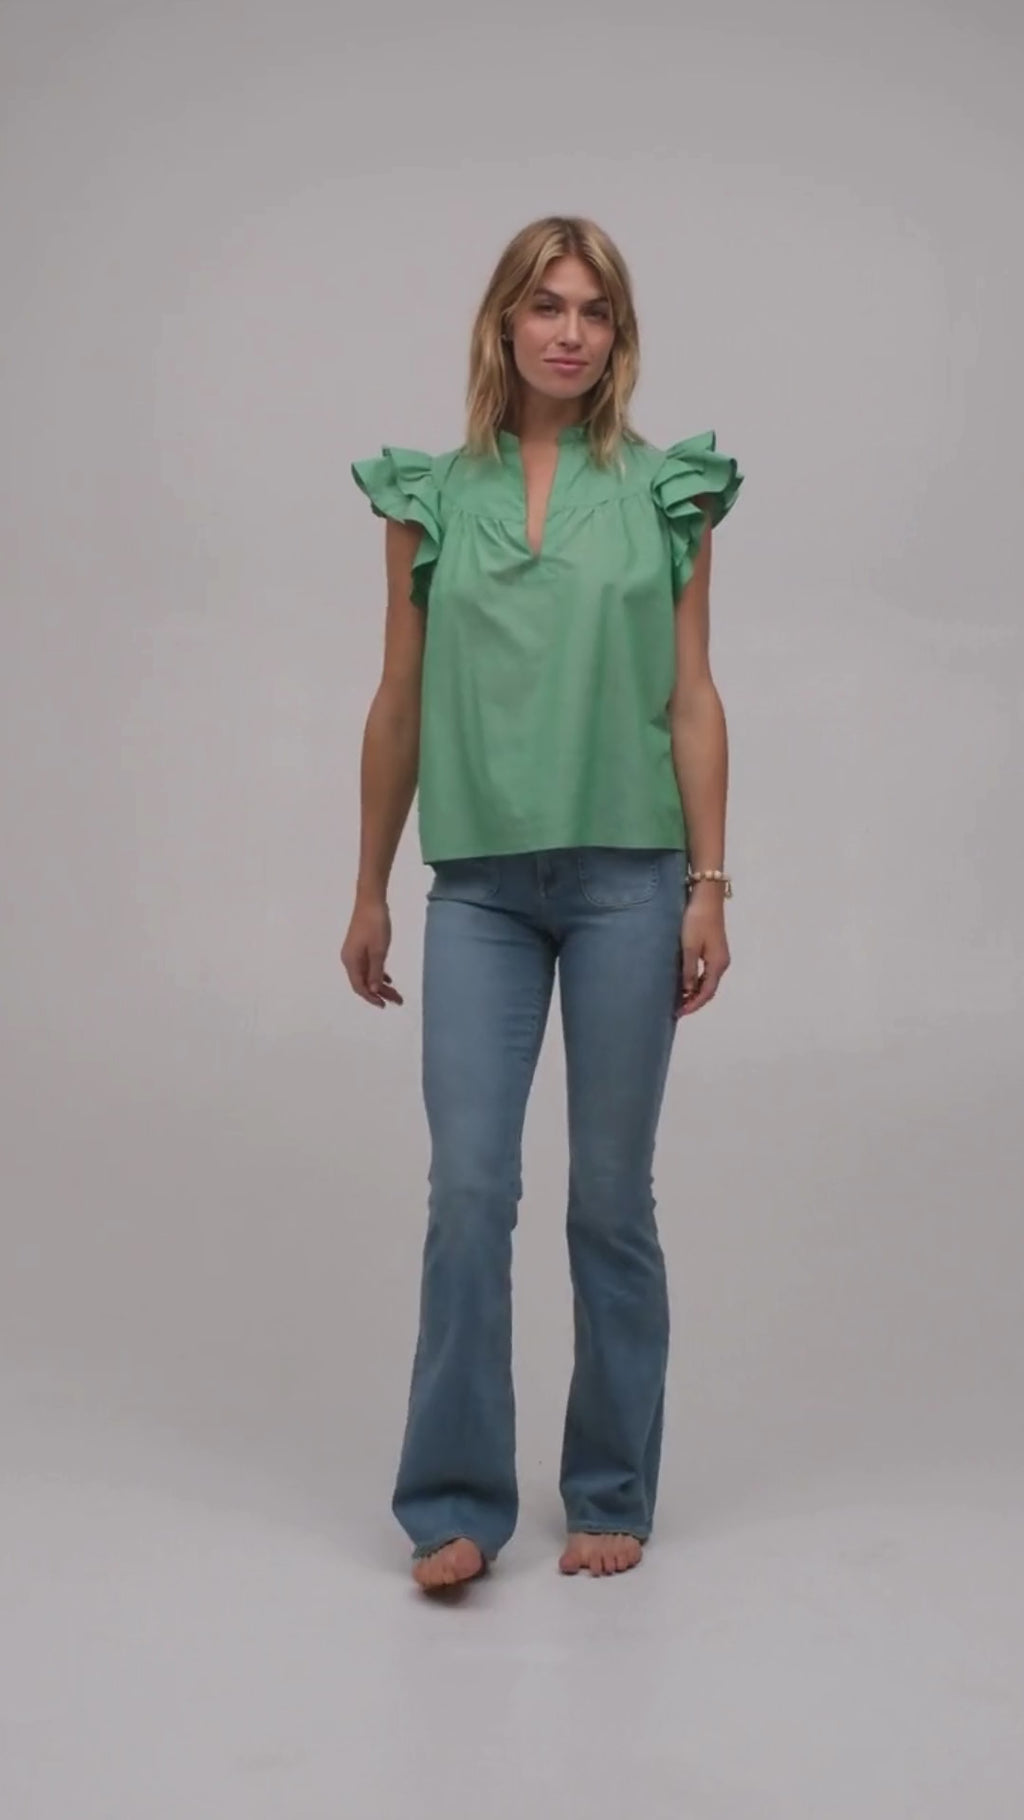 Model wearing a luxury flutter sleeve top in green Italian cotton